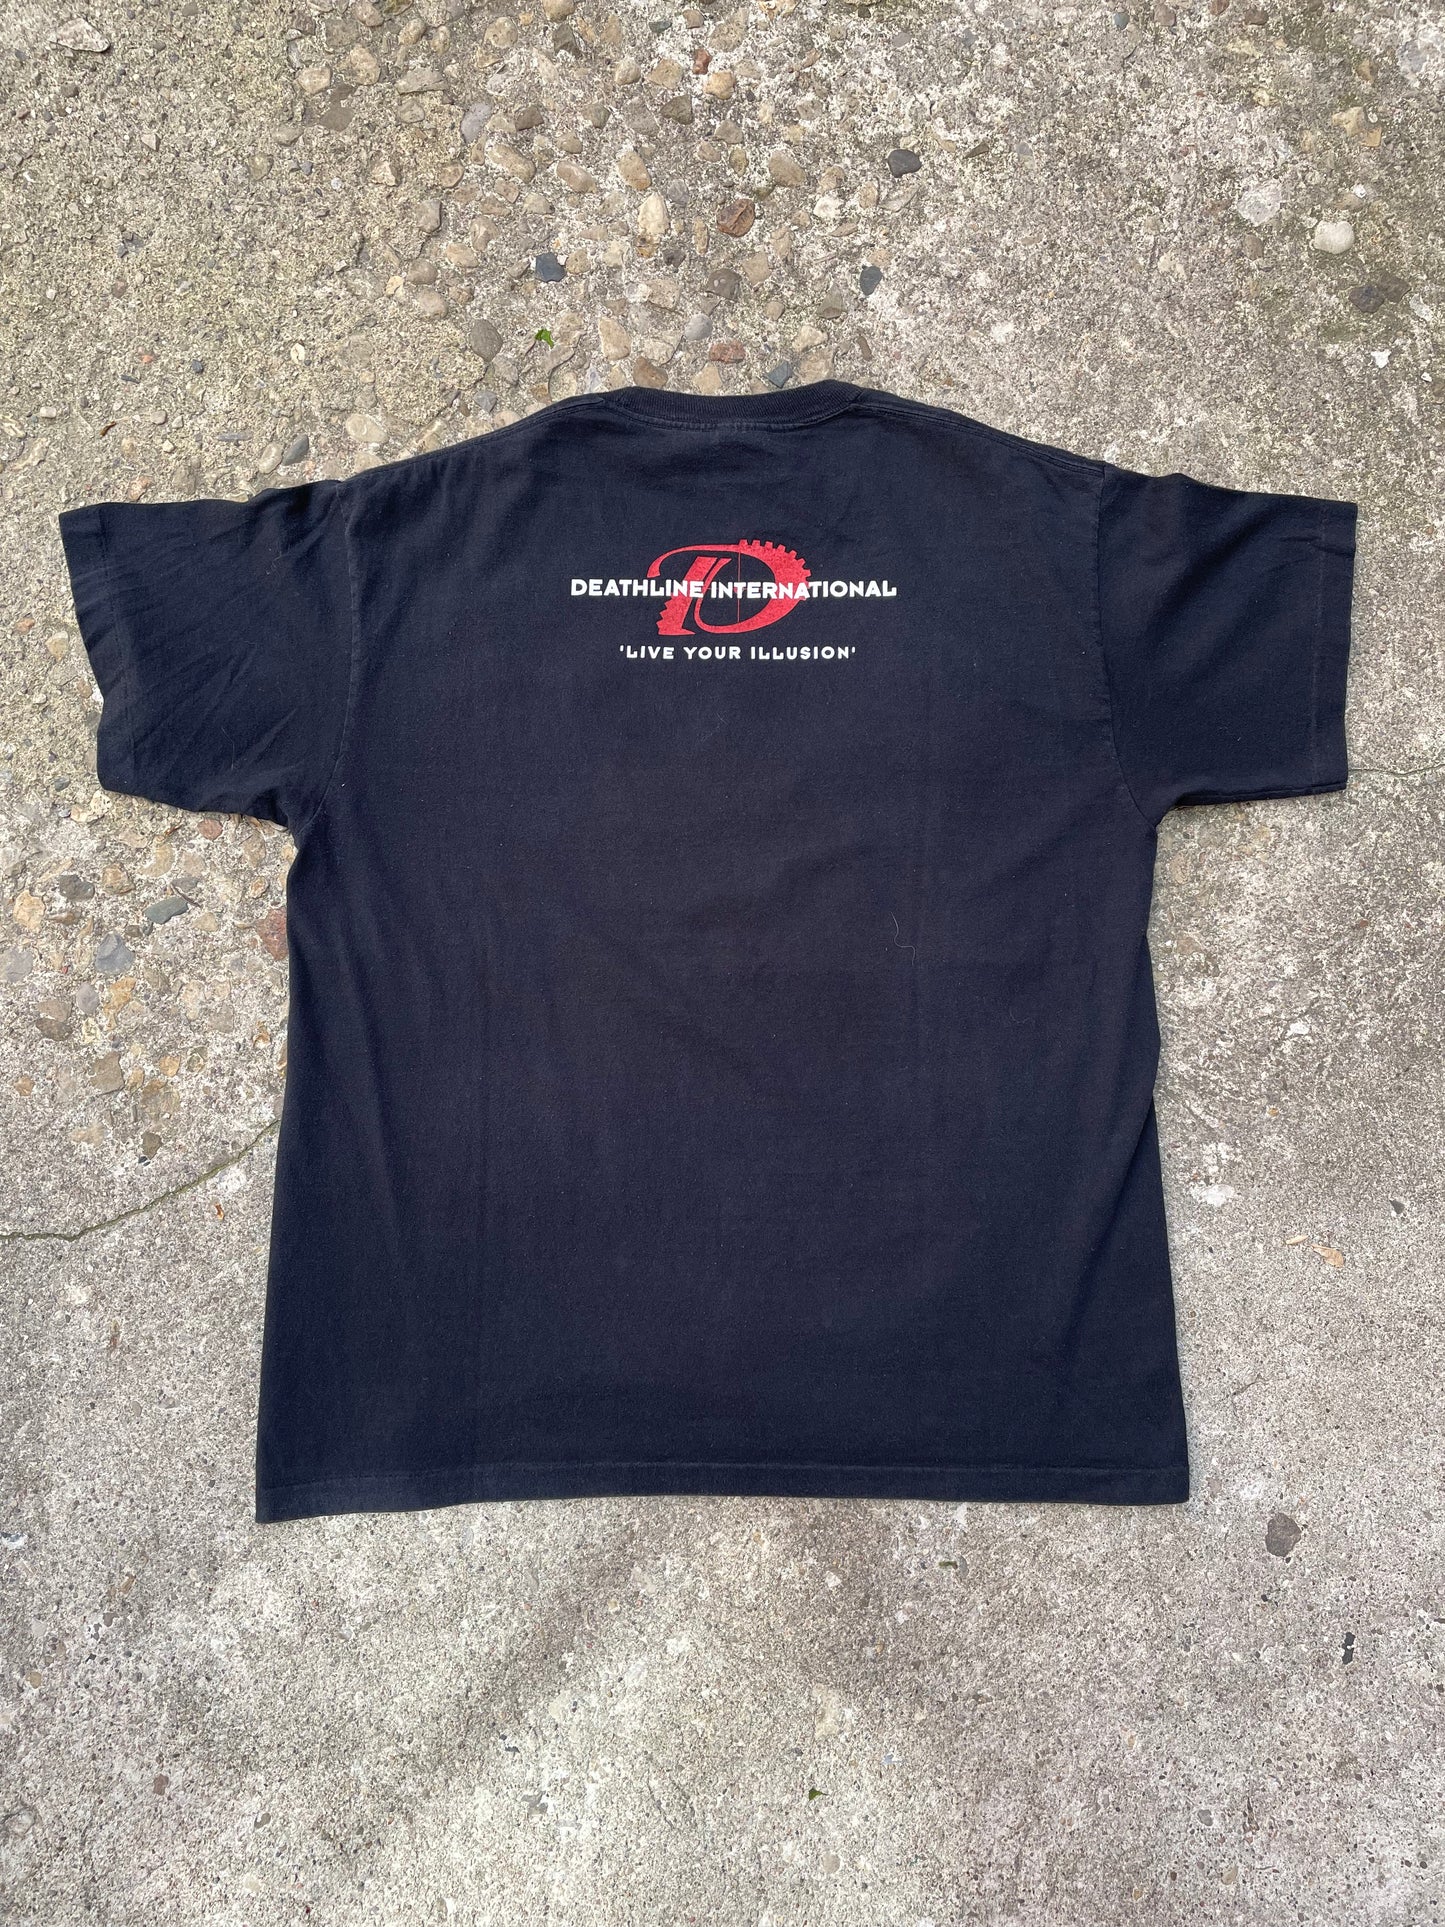 1997 'Arashi Syndrom' Deathline International Industrial Band T-Shirt - XL